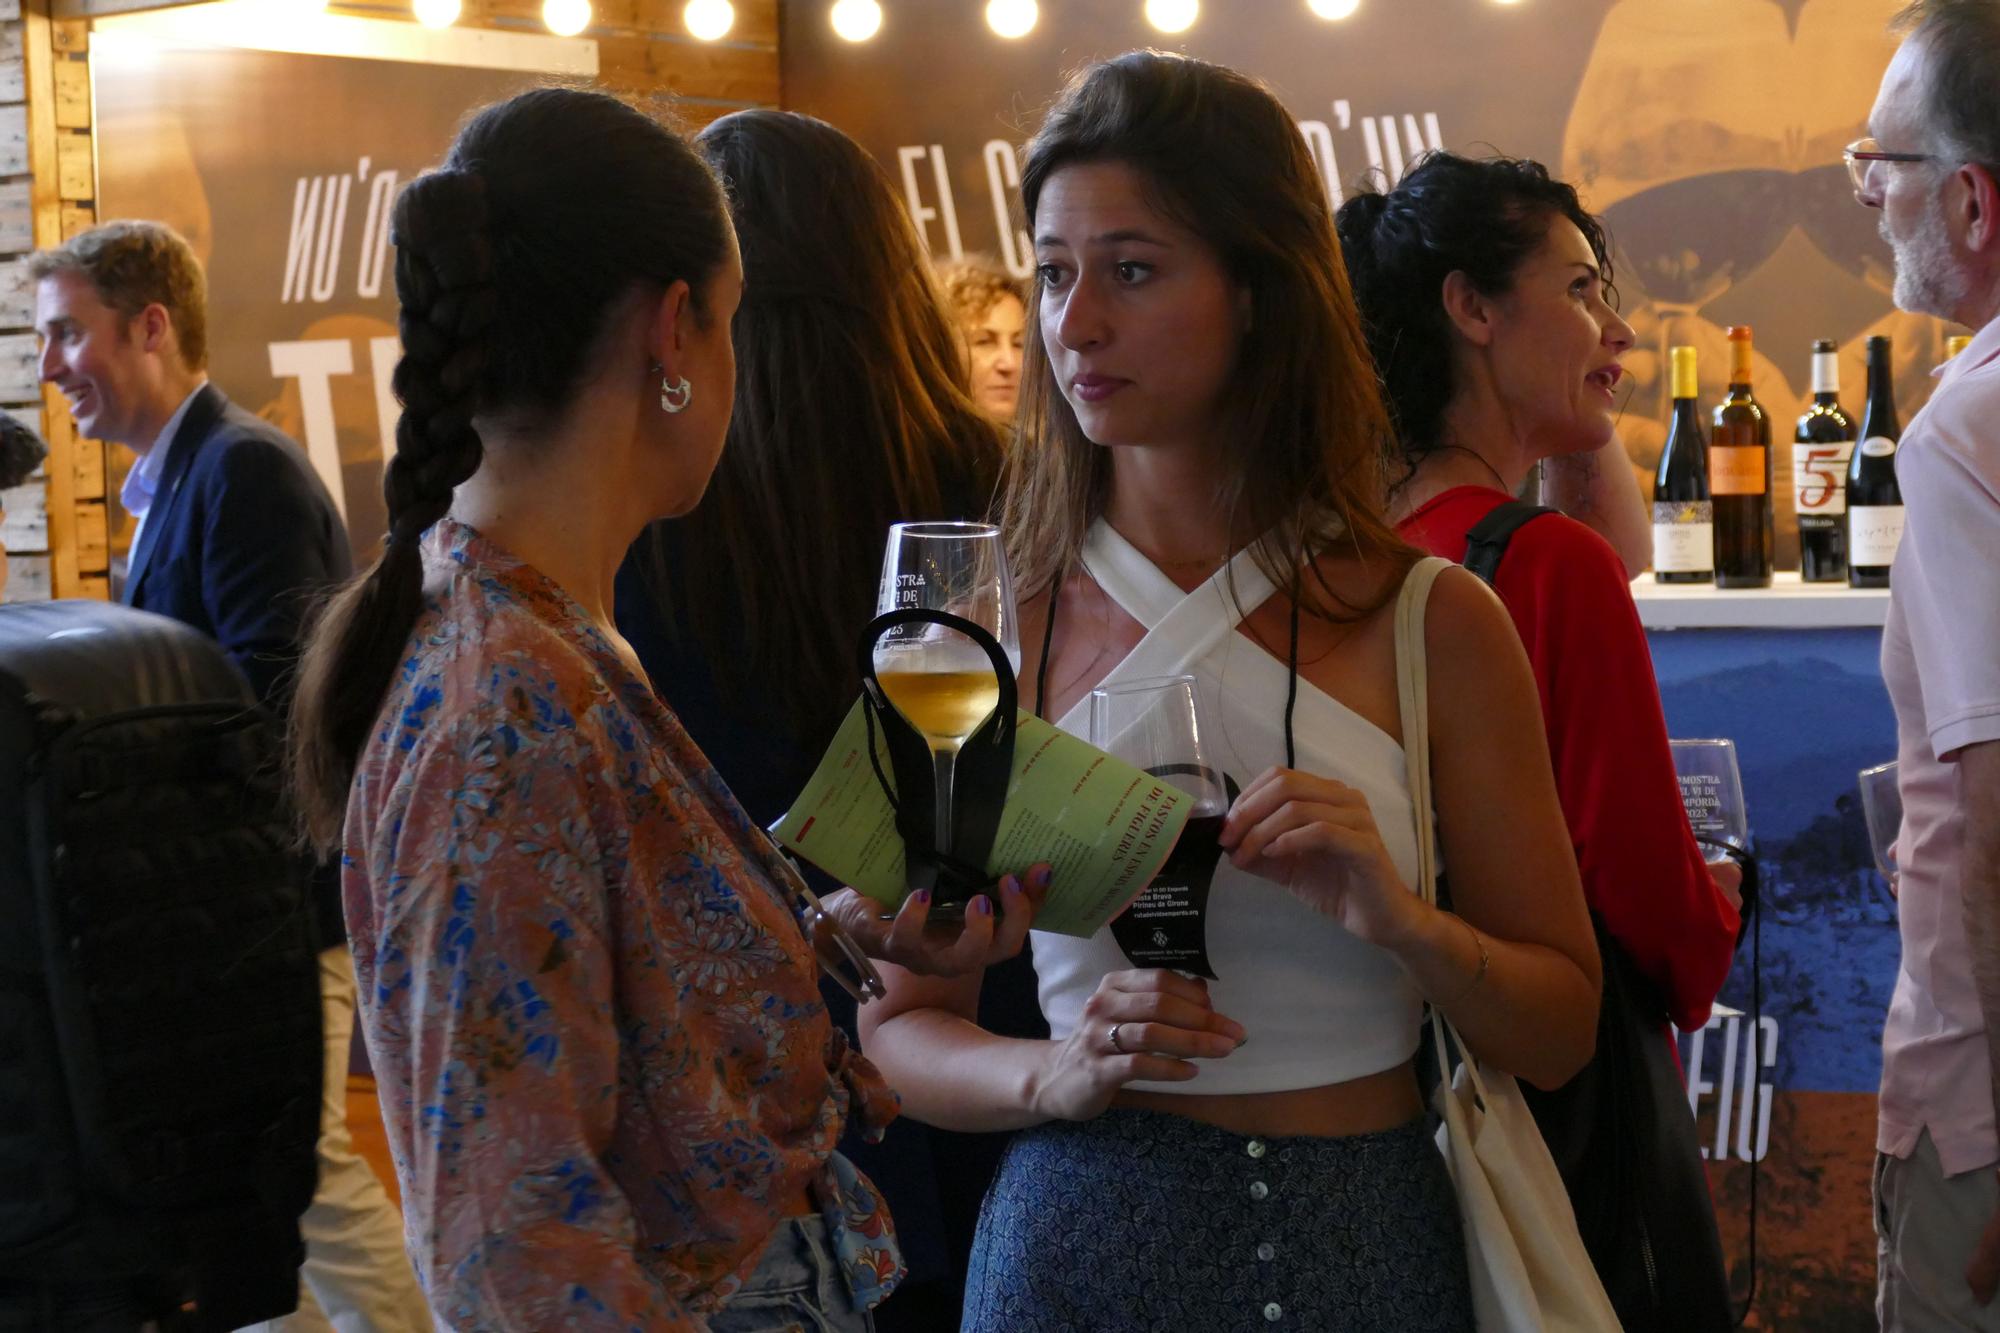 La 37a edició de la Mostra del Vi de Figueres supera els 6.000 visitants